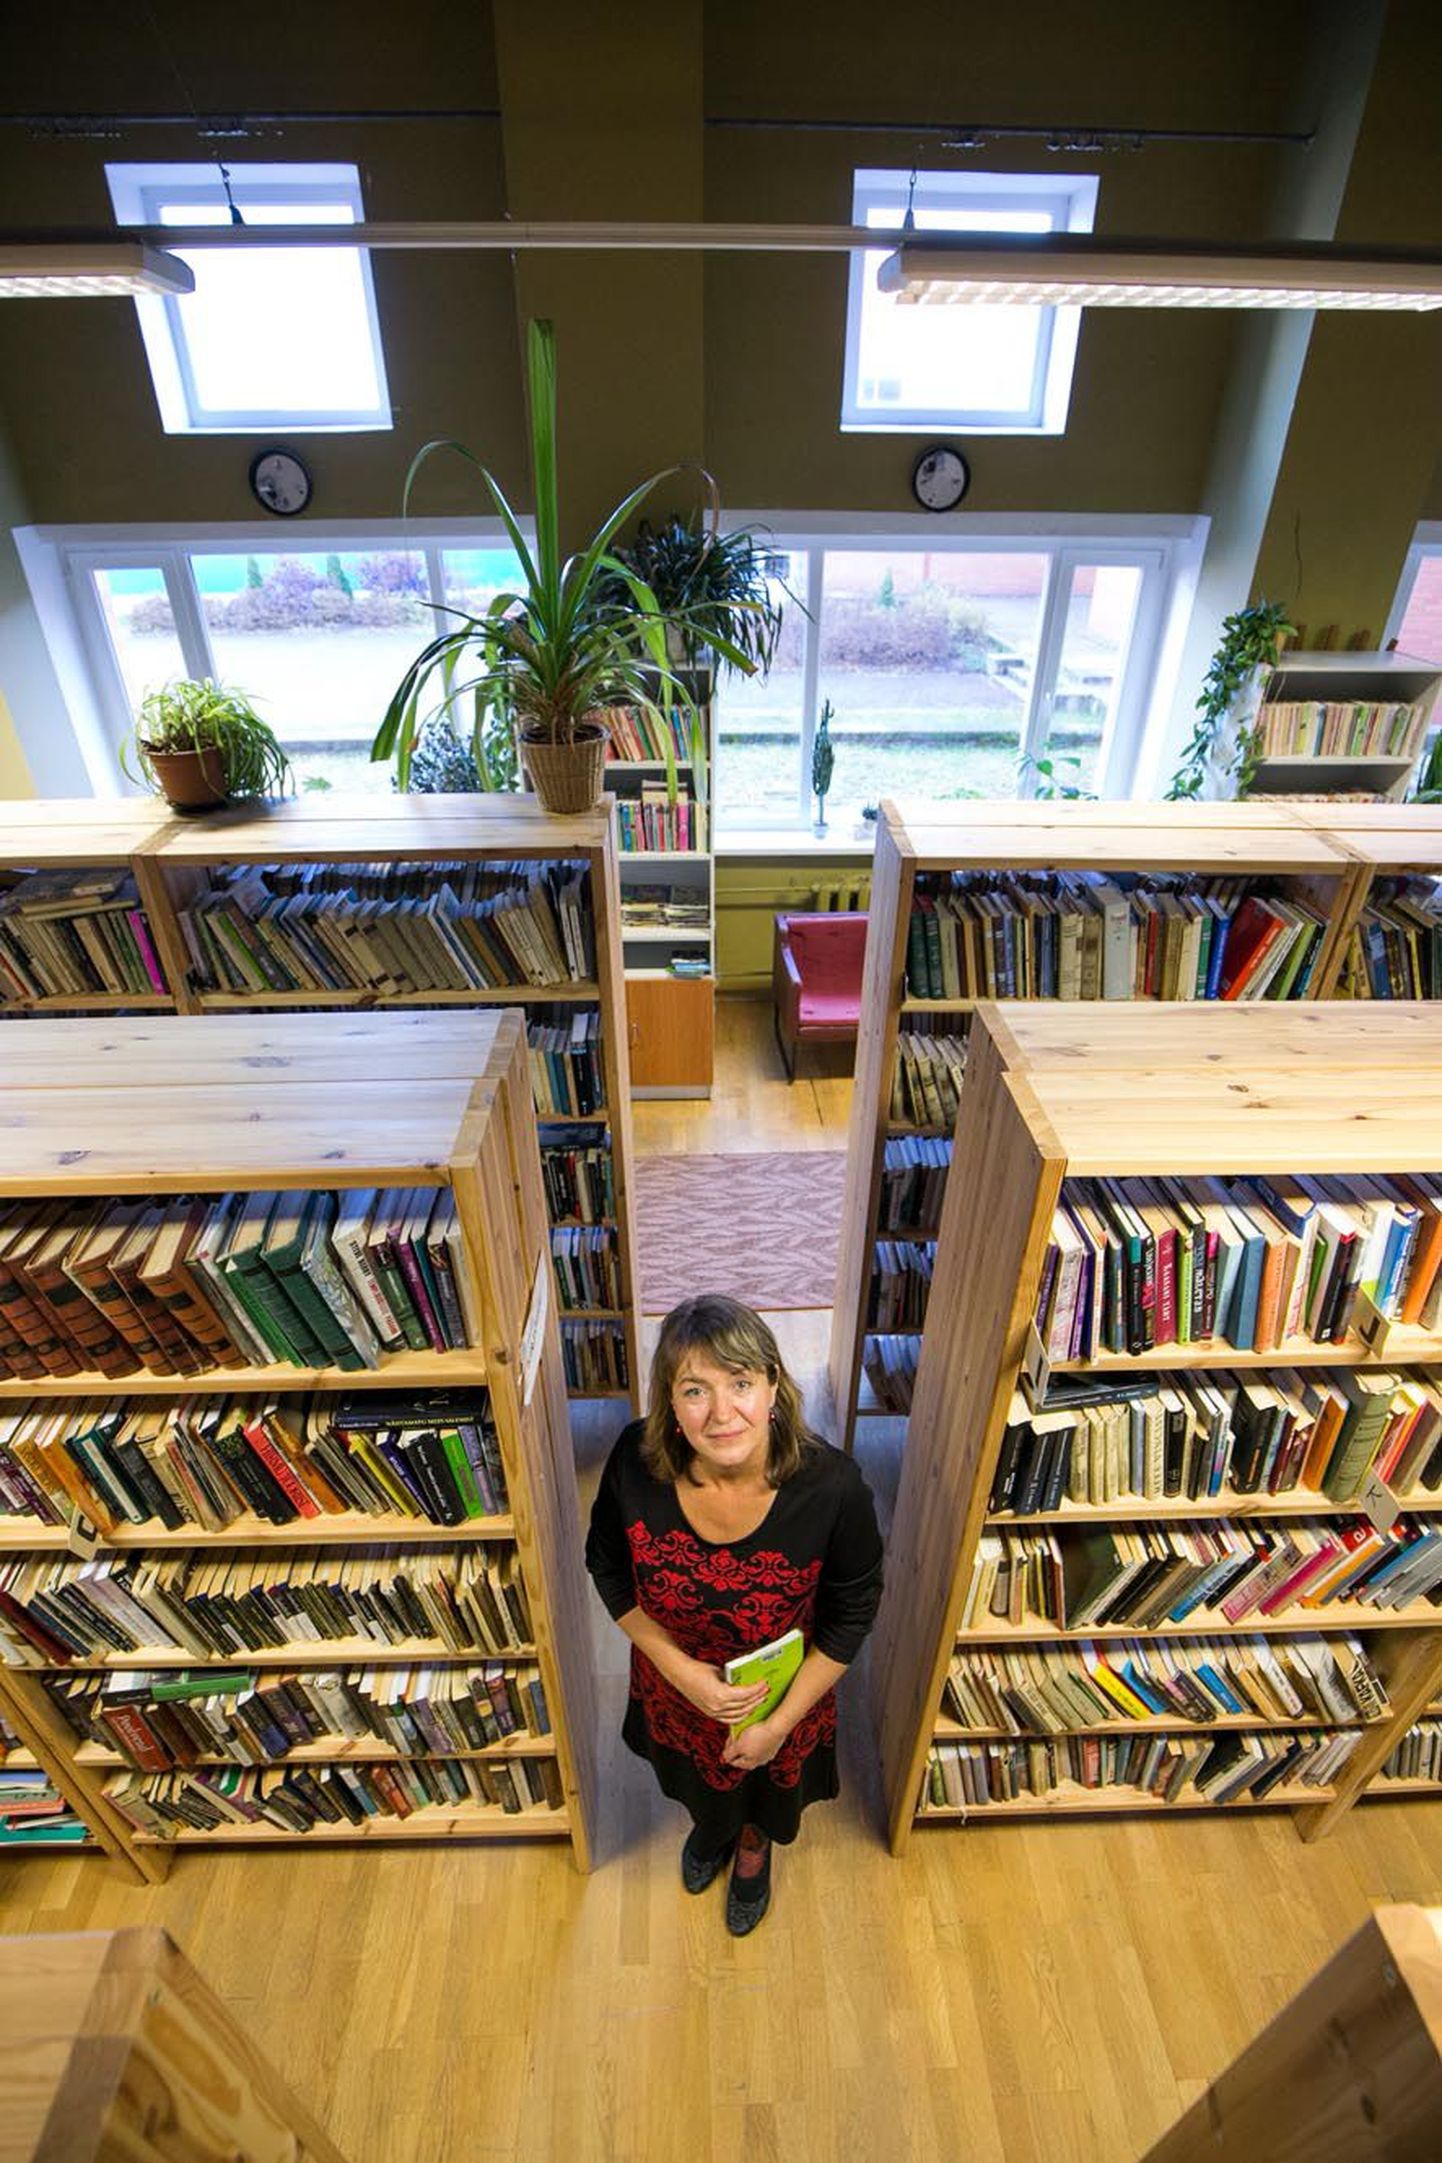 Aasta maaraamatukoguhoidja Allika Jüris juhatab Imavere raamatukogu 1988. aastast, kui lõpetas Viljandis kultuurikooli. Praeguses ruumis on tema igapäevatöö seotud kooliga.